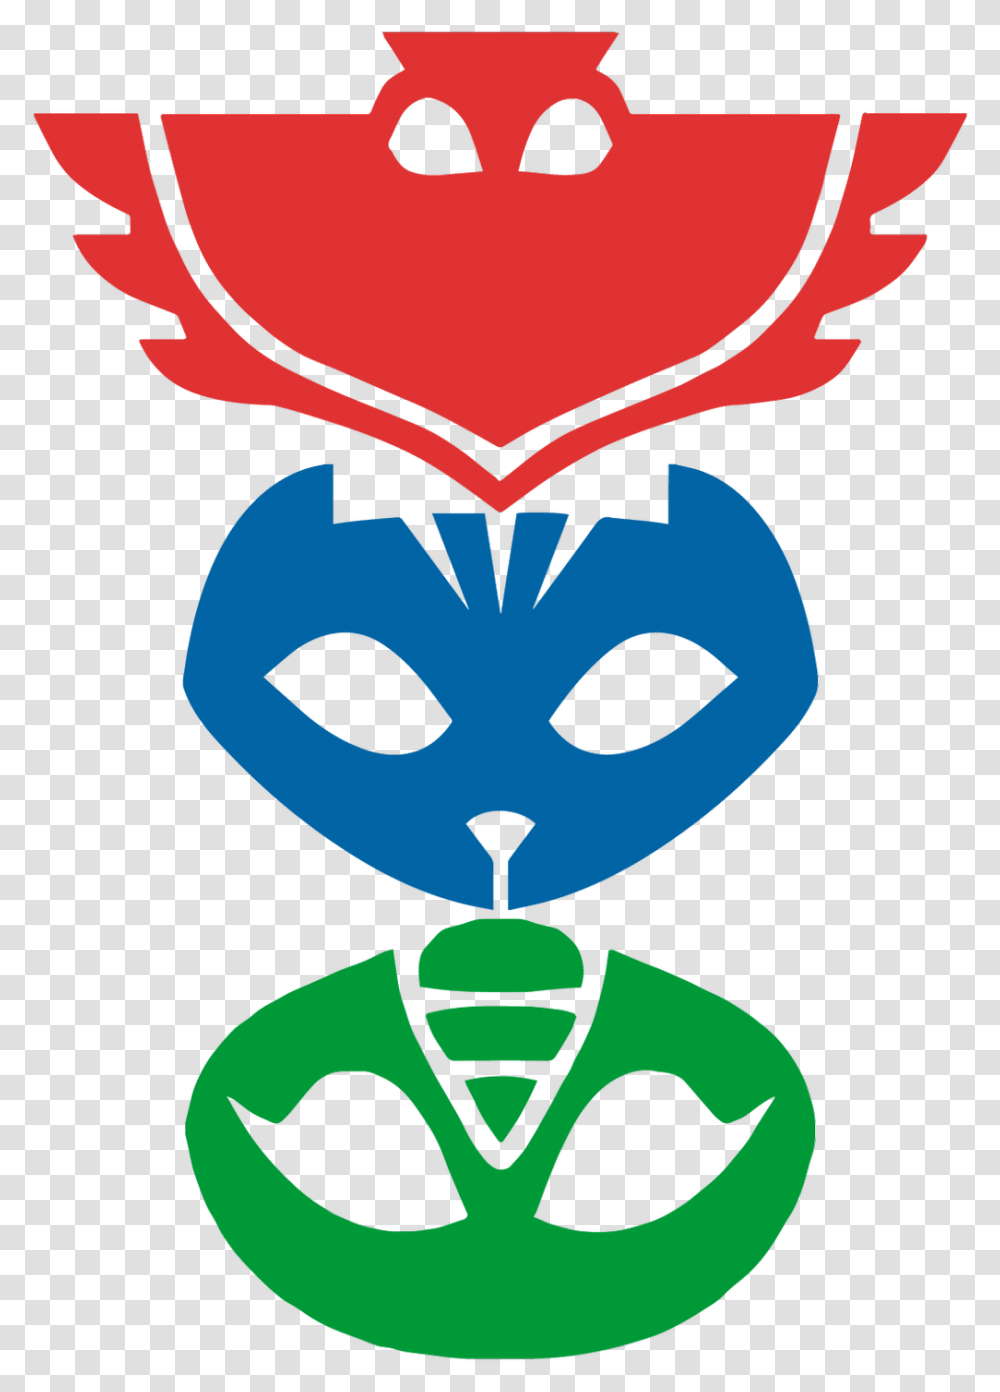 Pjmasks Sticker Pj Mask Symbol, Alien, Poster, Advertisement, Emblem Transparent Png